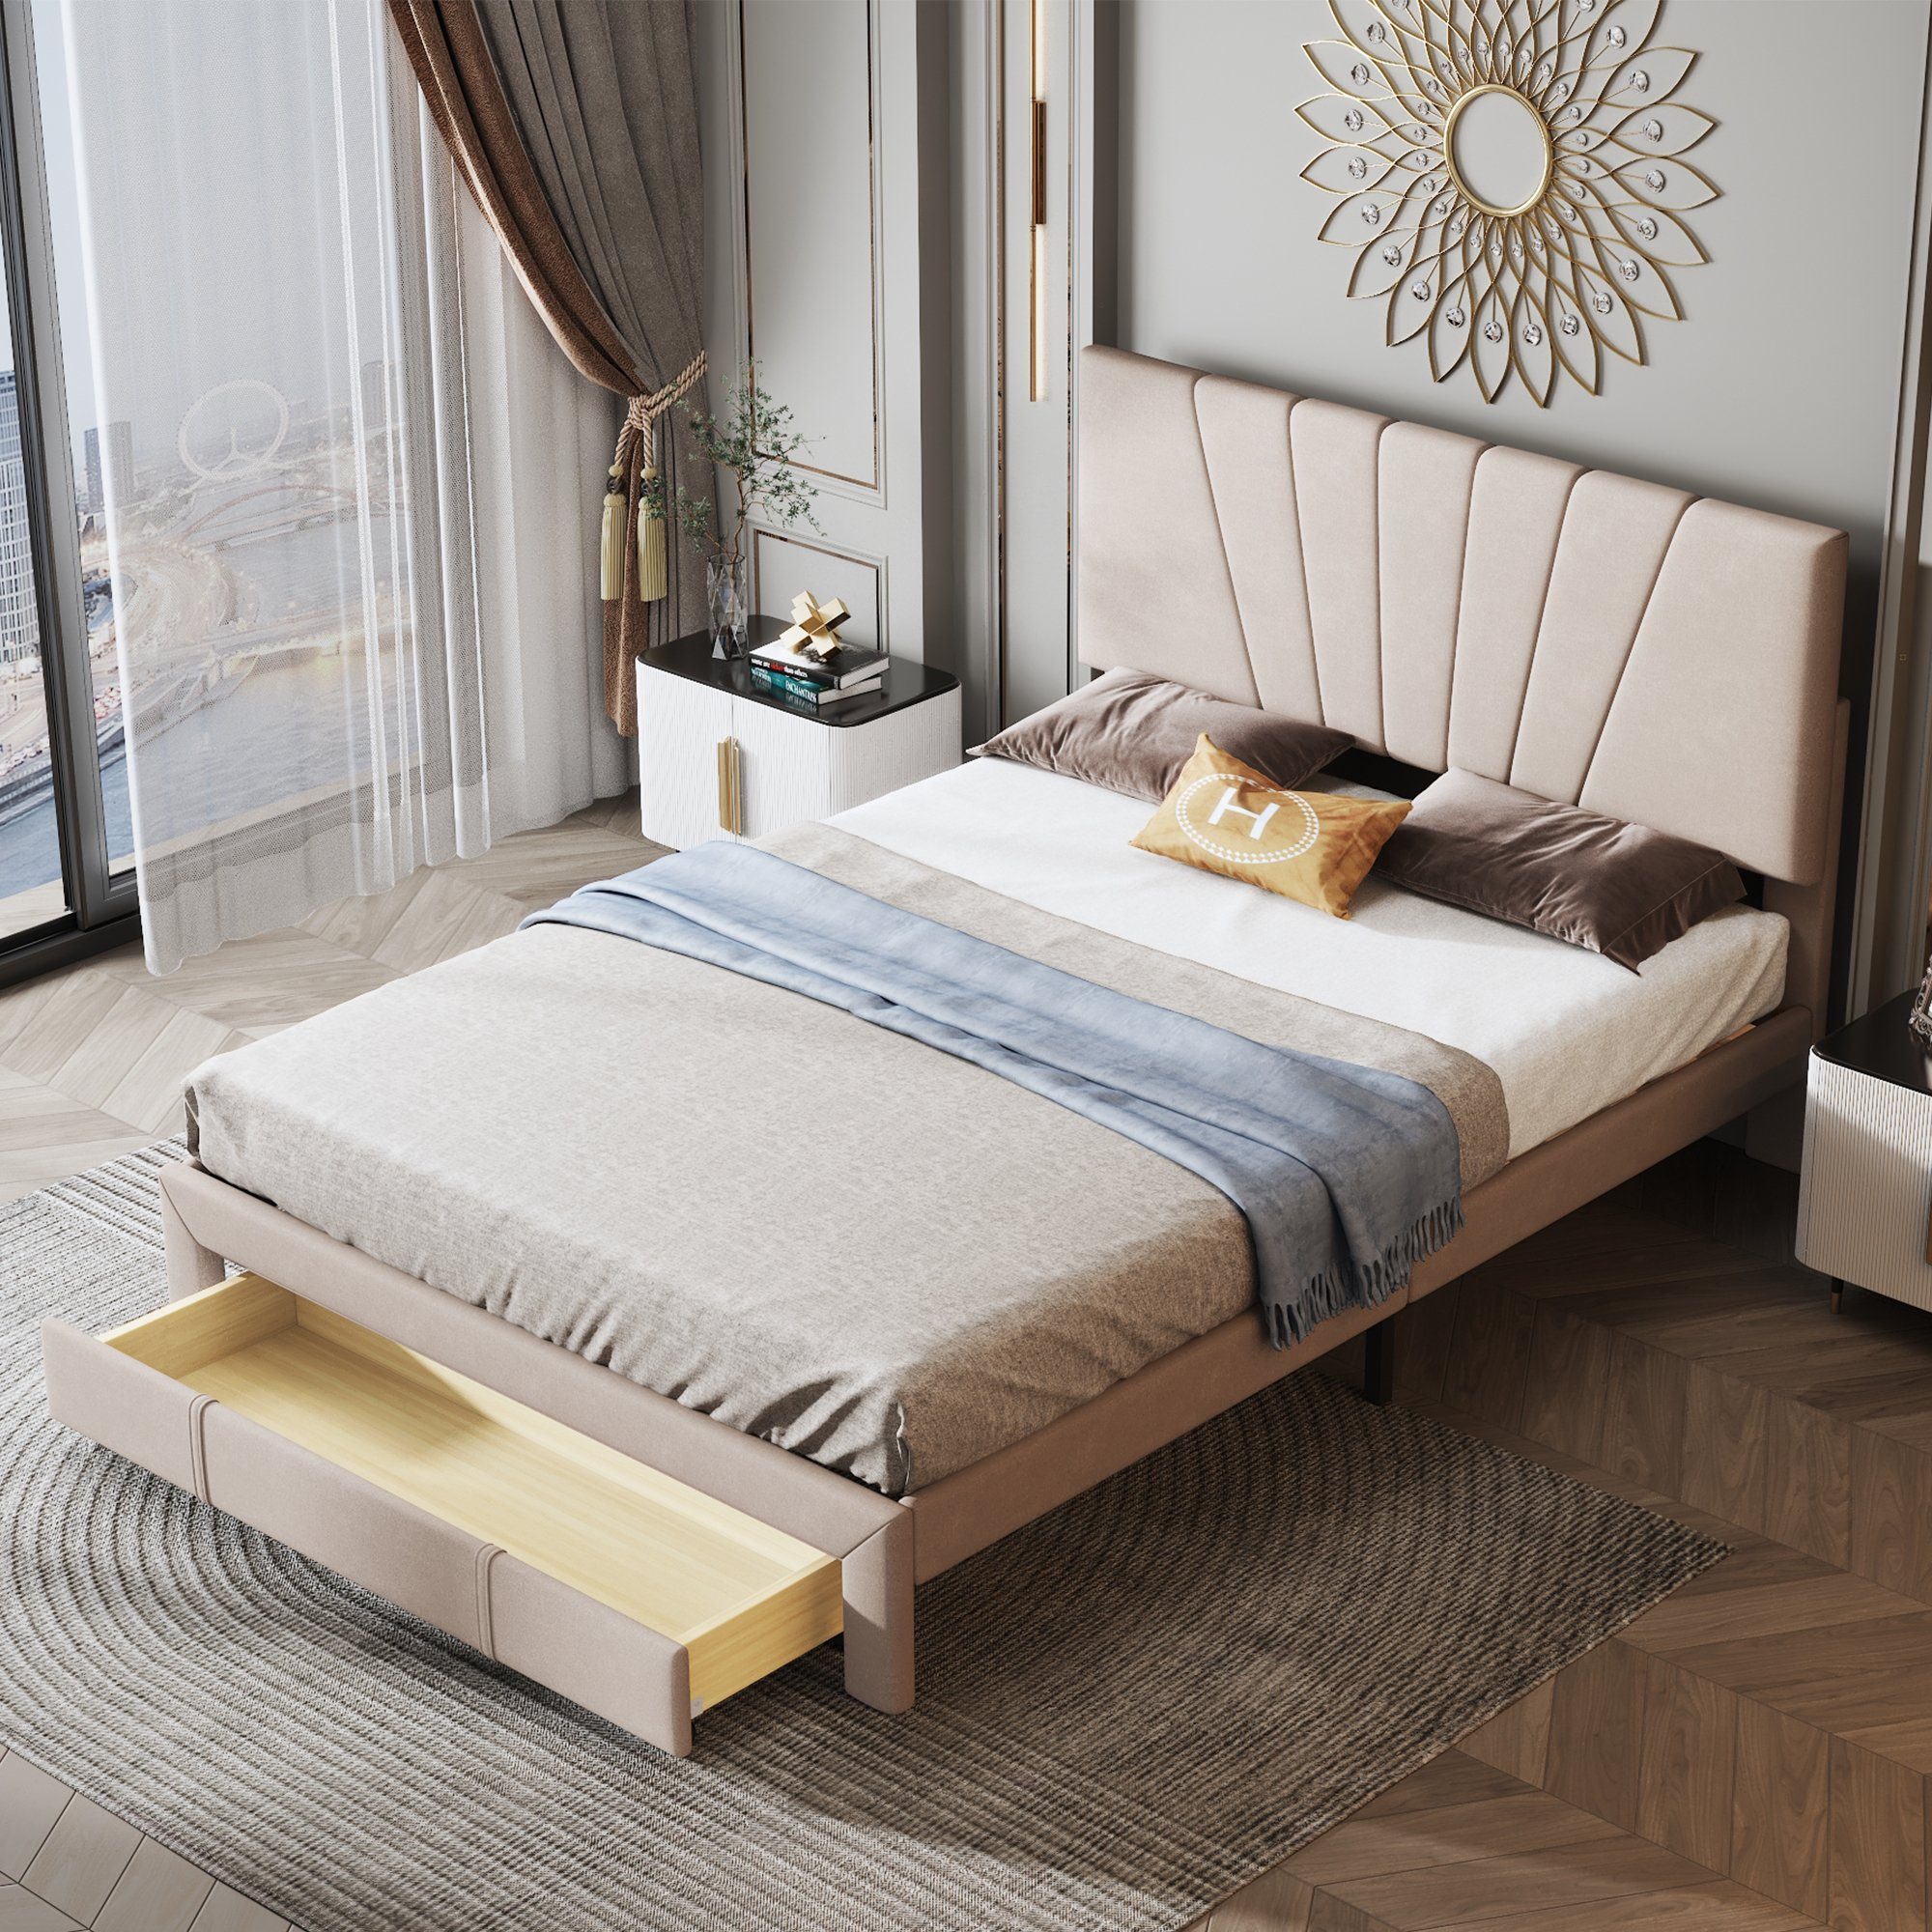 REDOM Polsterbett Doppelbett Bett Holzbett mit Bettgestell ohne Matratze 140*200 cm (mit Rückenlehne und großer Schublade) Beige